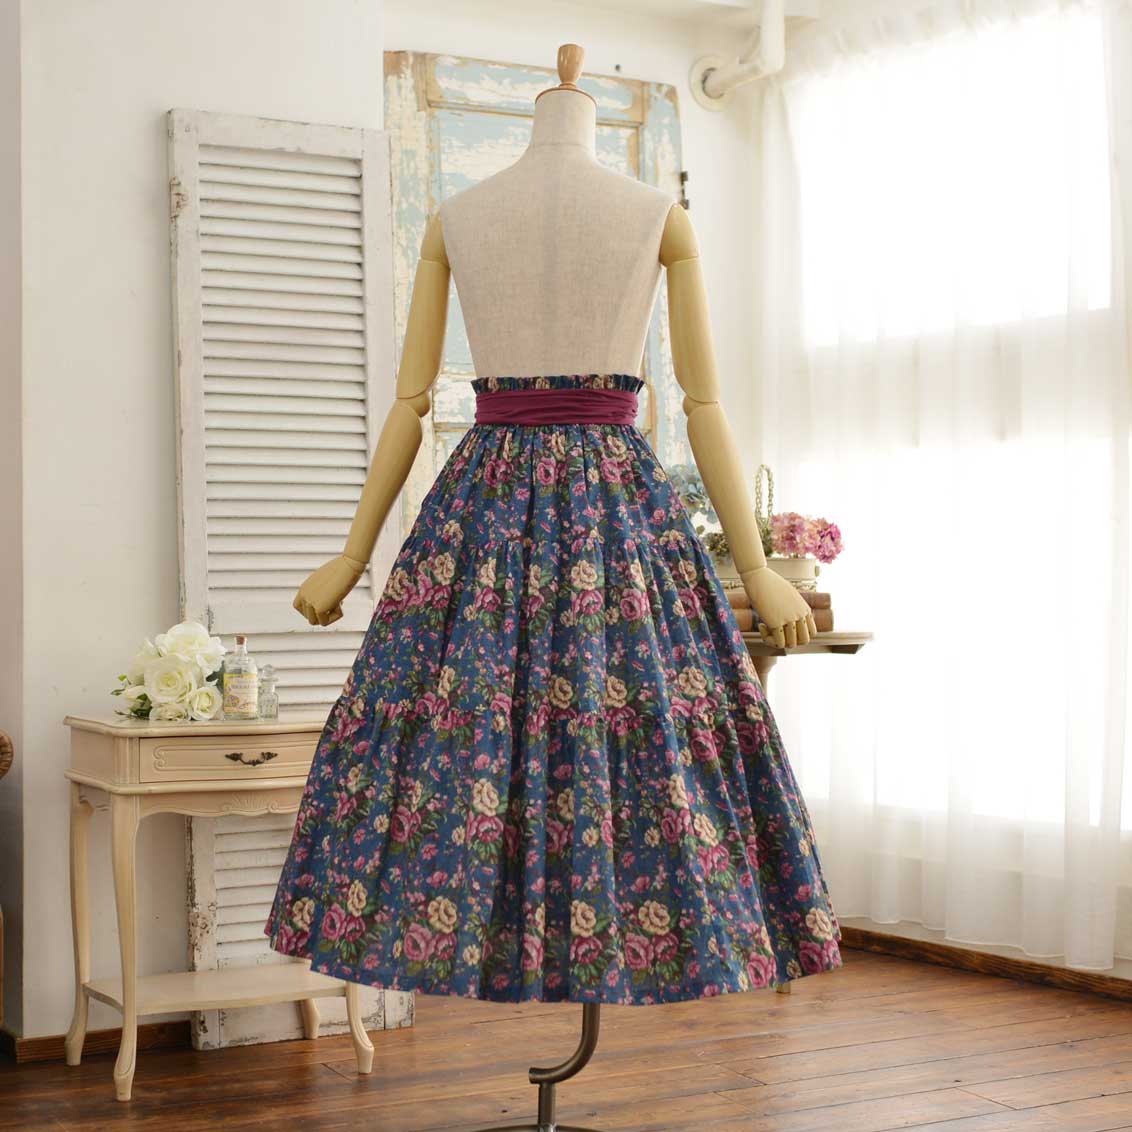 ROSA BIANCA online shop= プチポワンプリントのティアードスカート =